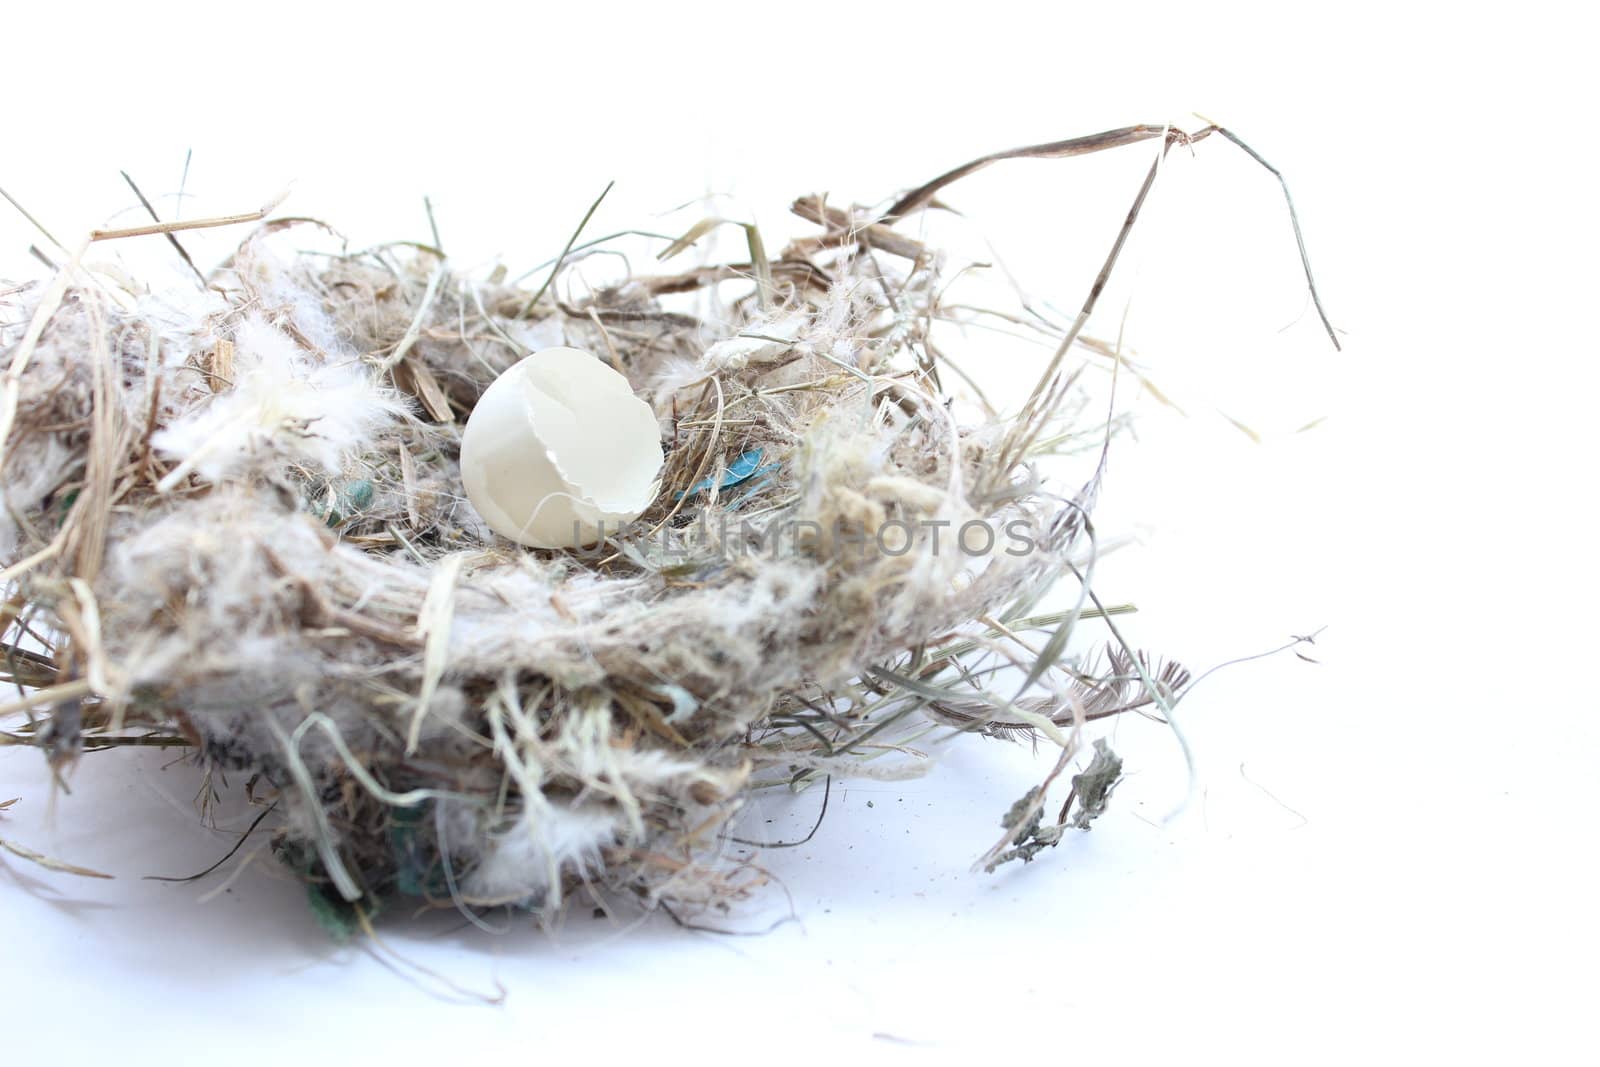 Egg in Bird Nest by abhbah05